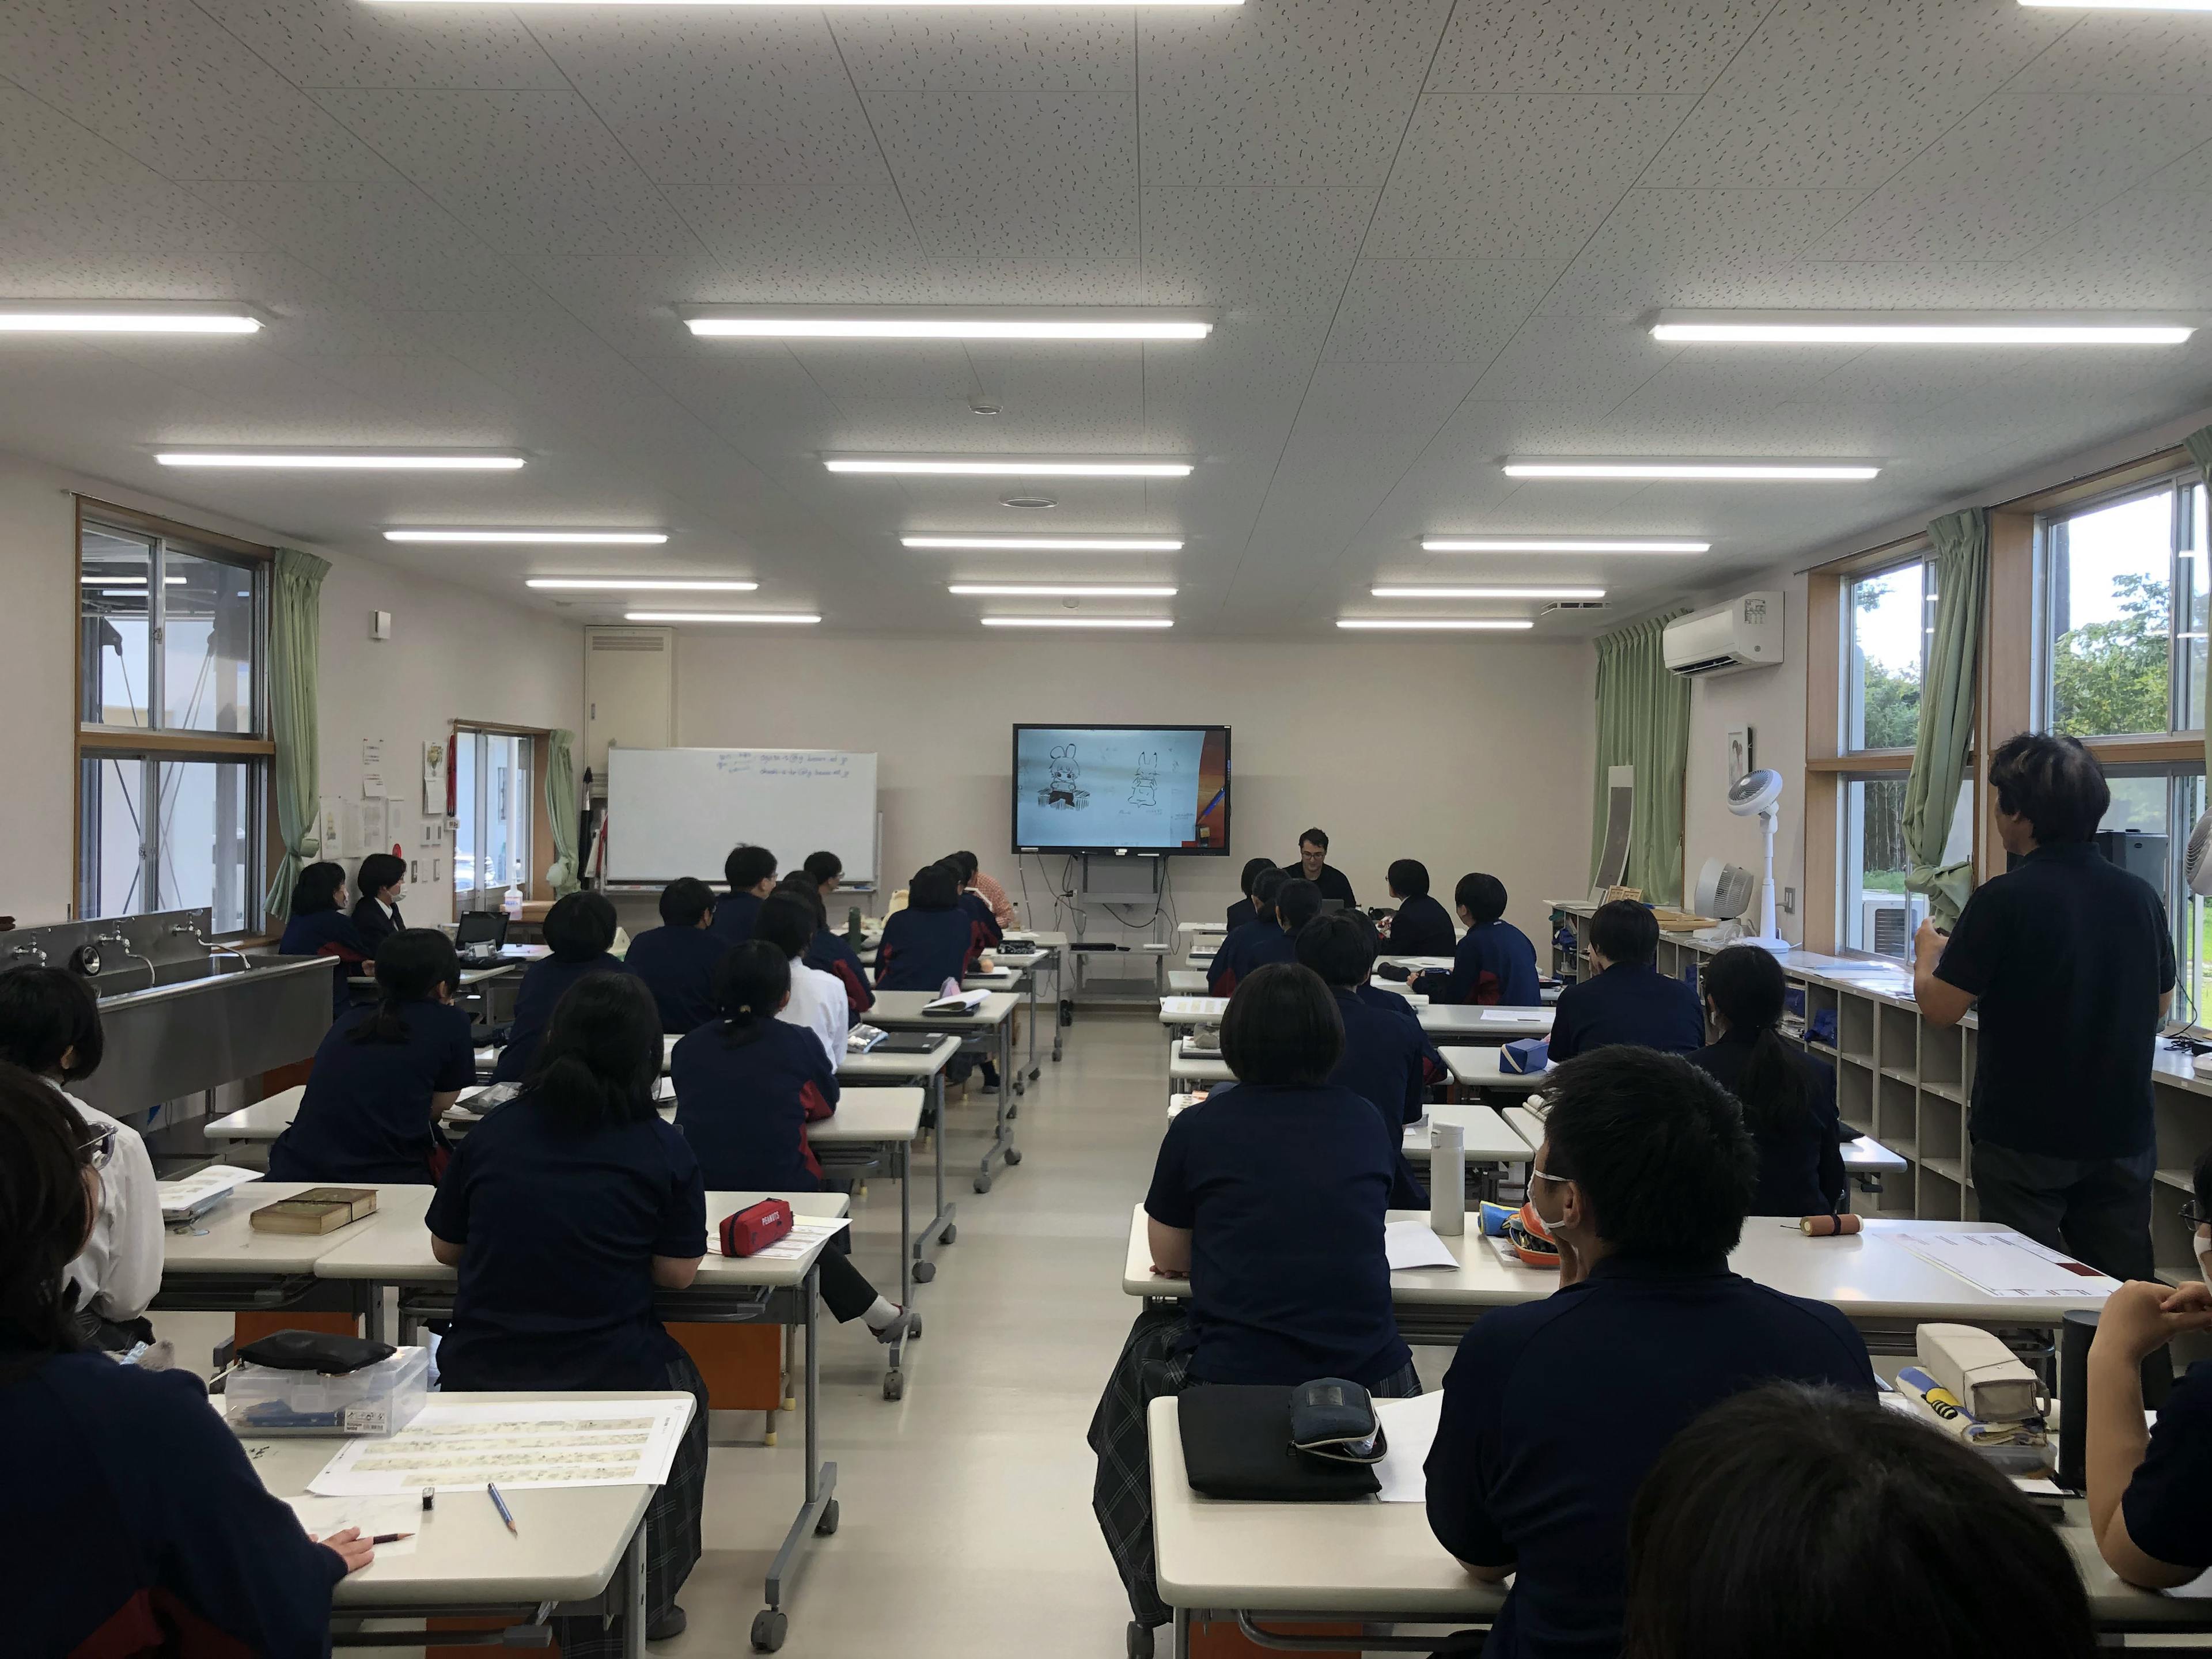 Departemen manga di SMA Takamori diperkenalkan di acara "Pertanyaan Besar 100 Juta Orang!? Senyum dan Kolase" di Nippon Television!